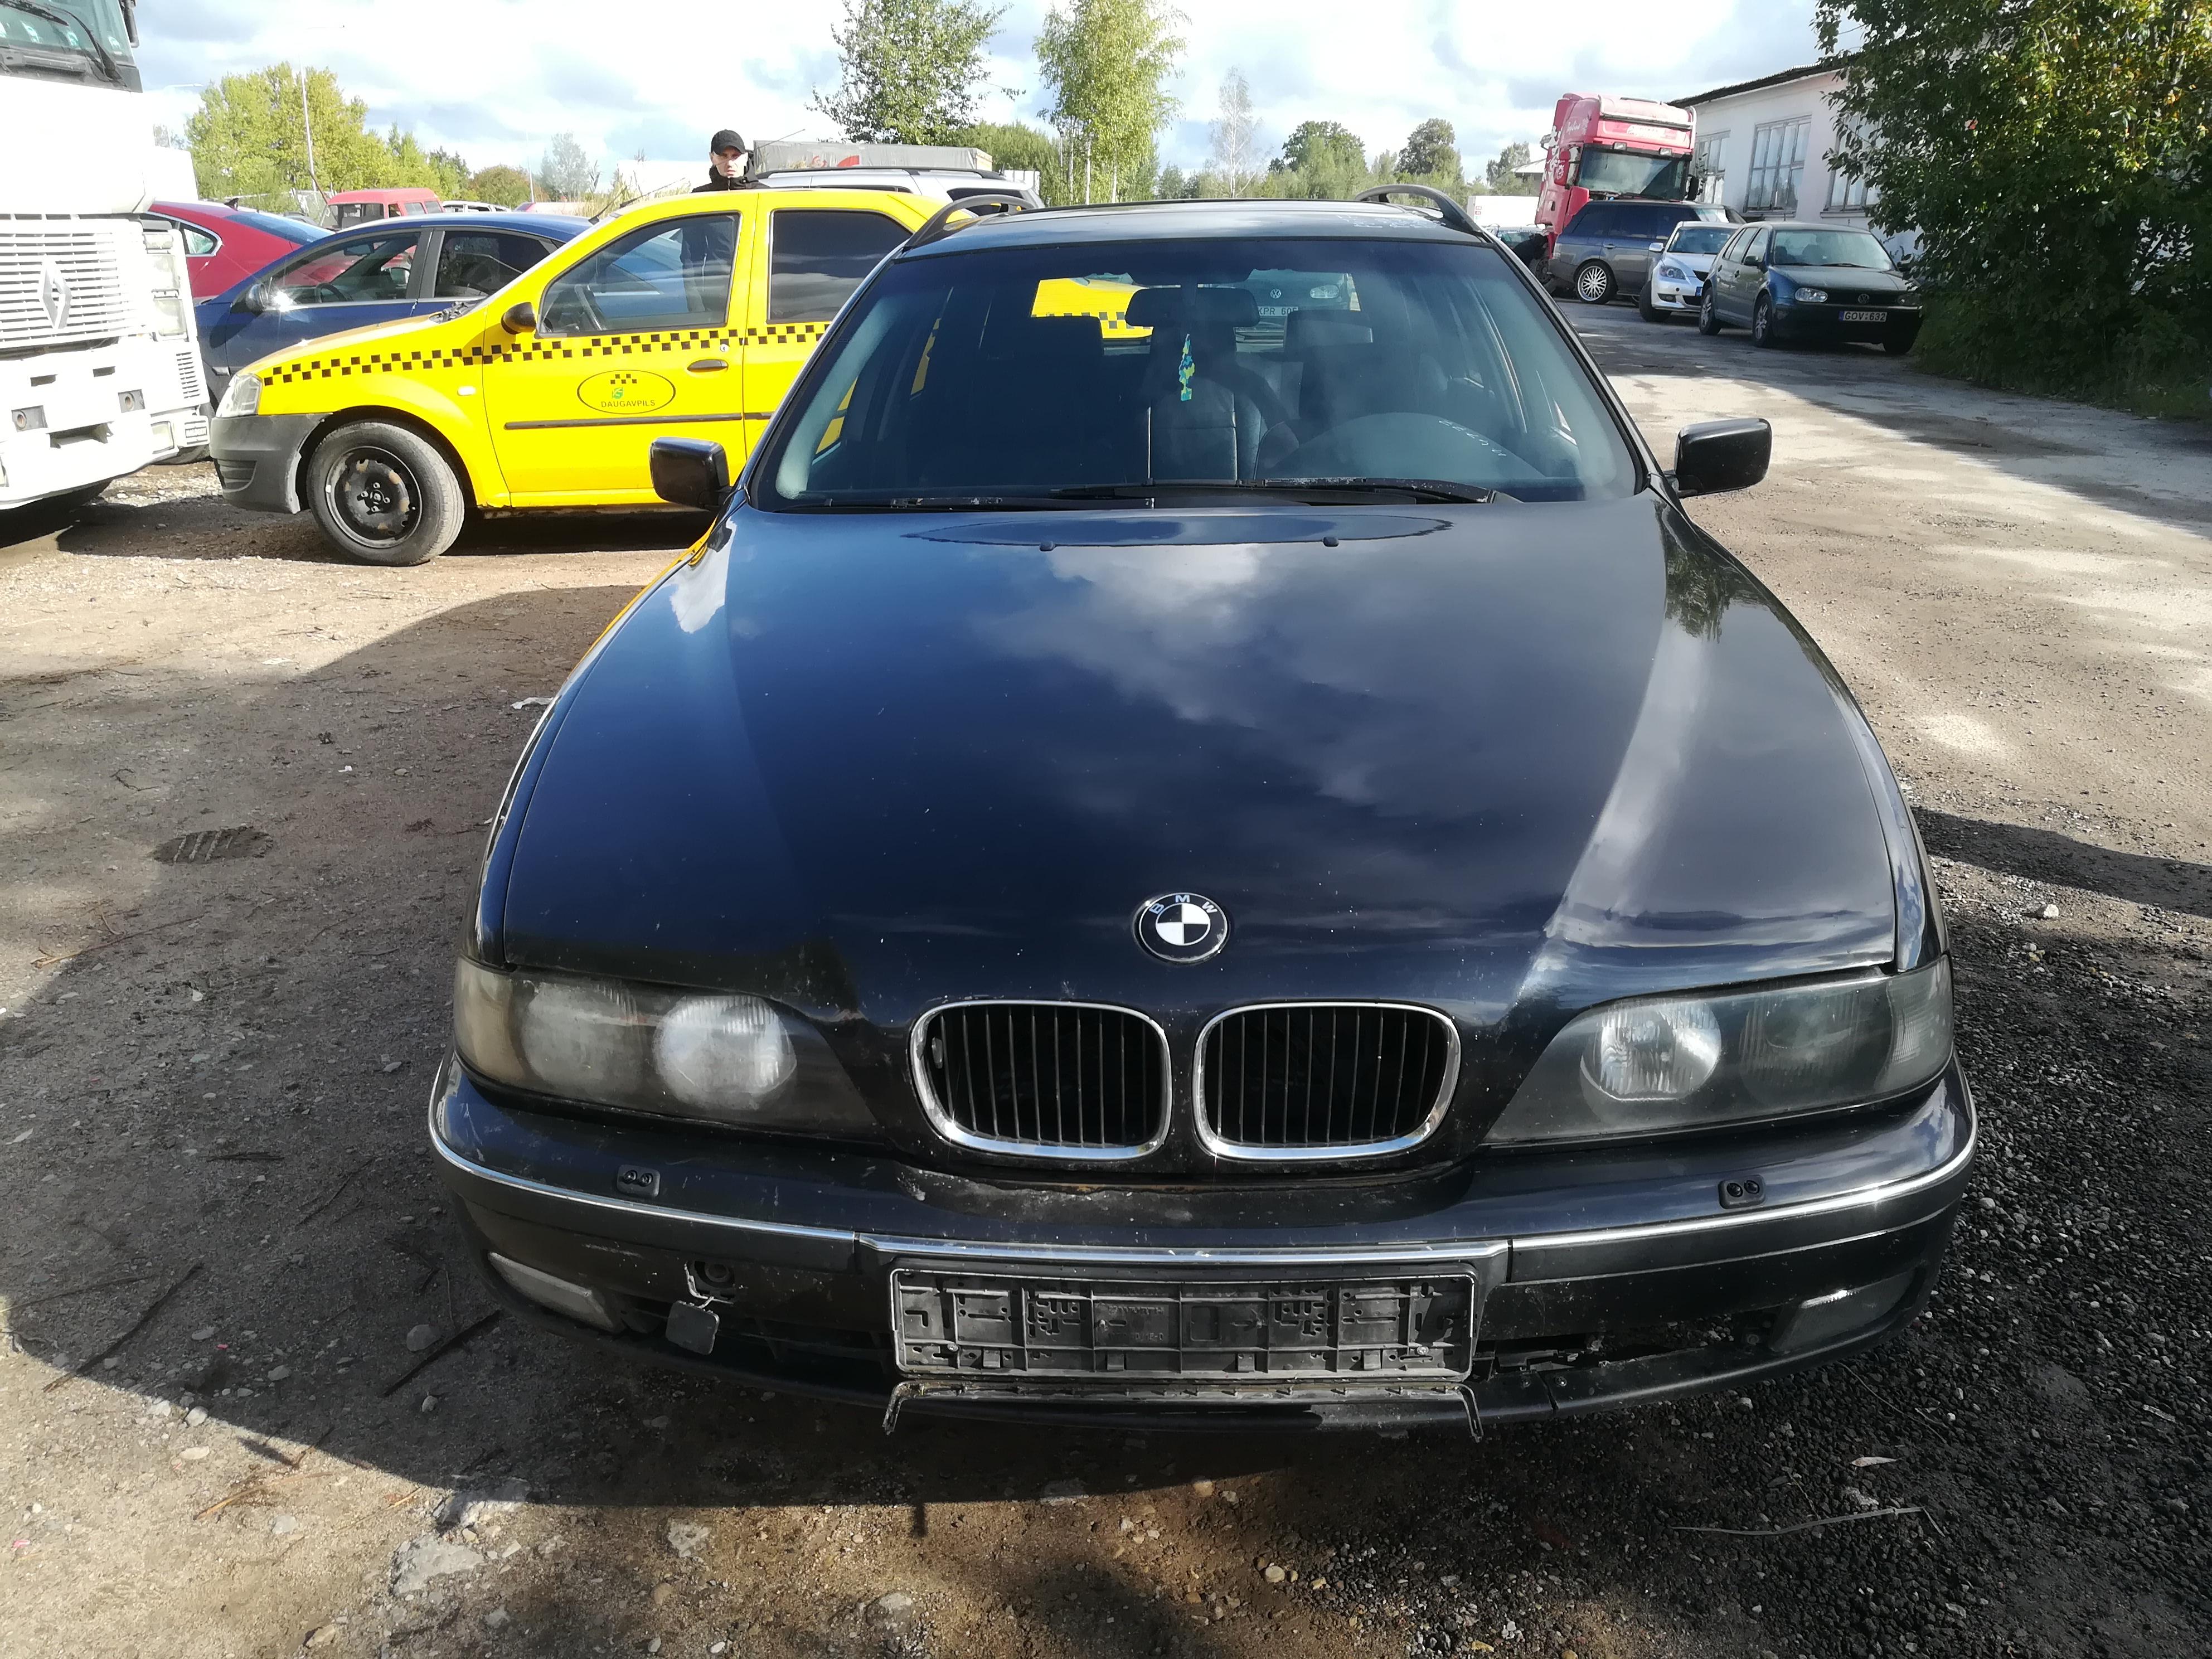 Подержанные Автозапчасти BMW 5-SERIES 1997 2.5 машиностроение универсал 4/5 d. черный 2019-9-20